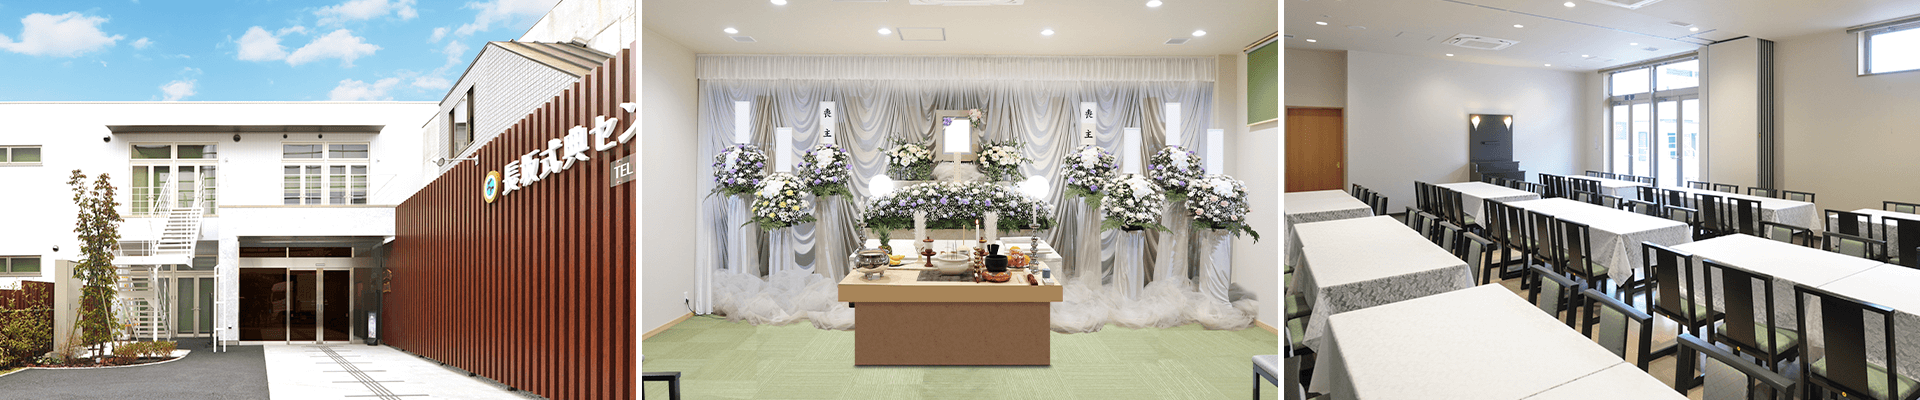 葬儀・葬式・家族葬なら16.5万円からできる長坂式典センター 調布市の葬儀場一覧